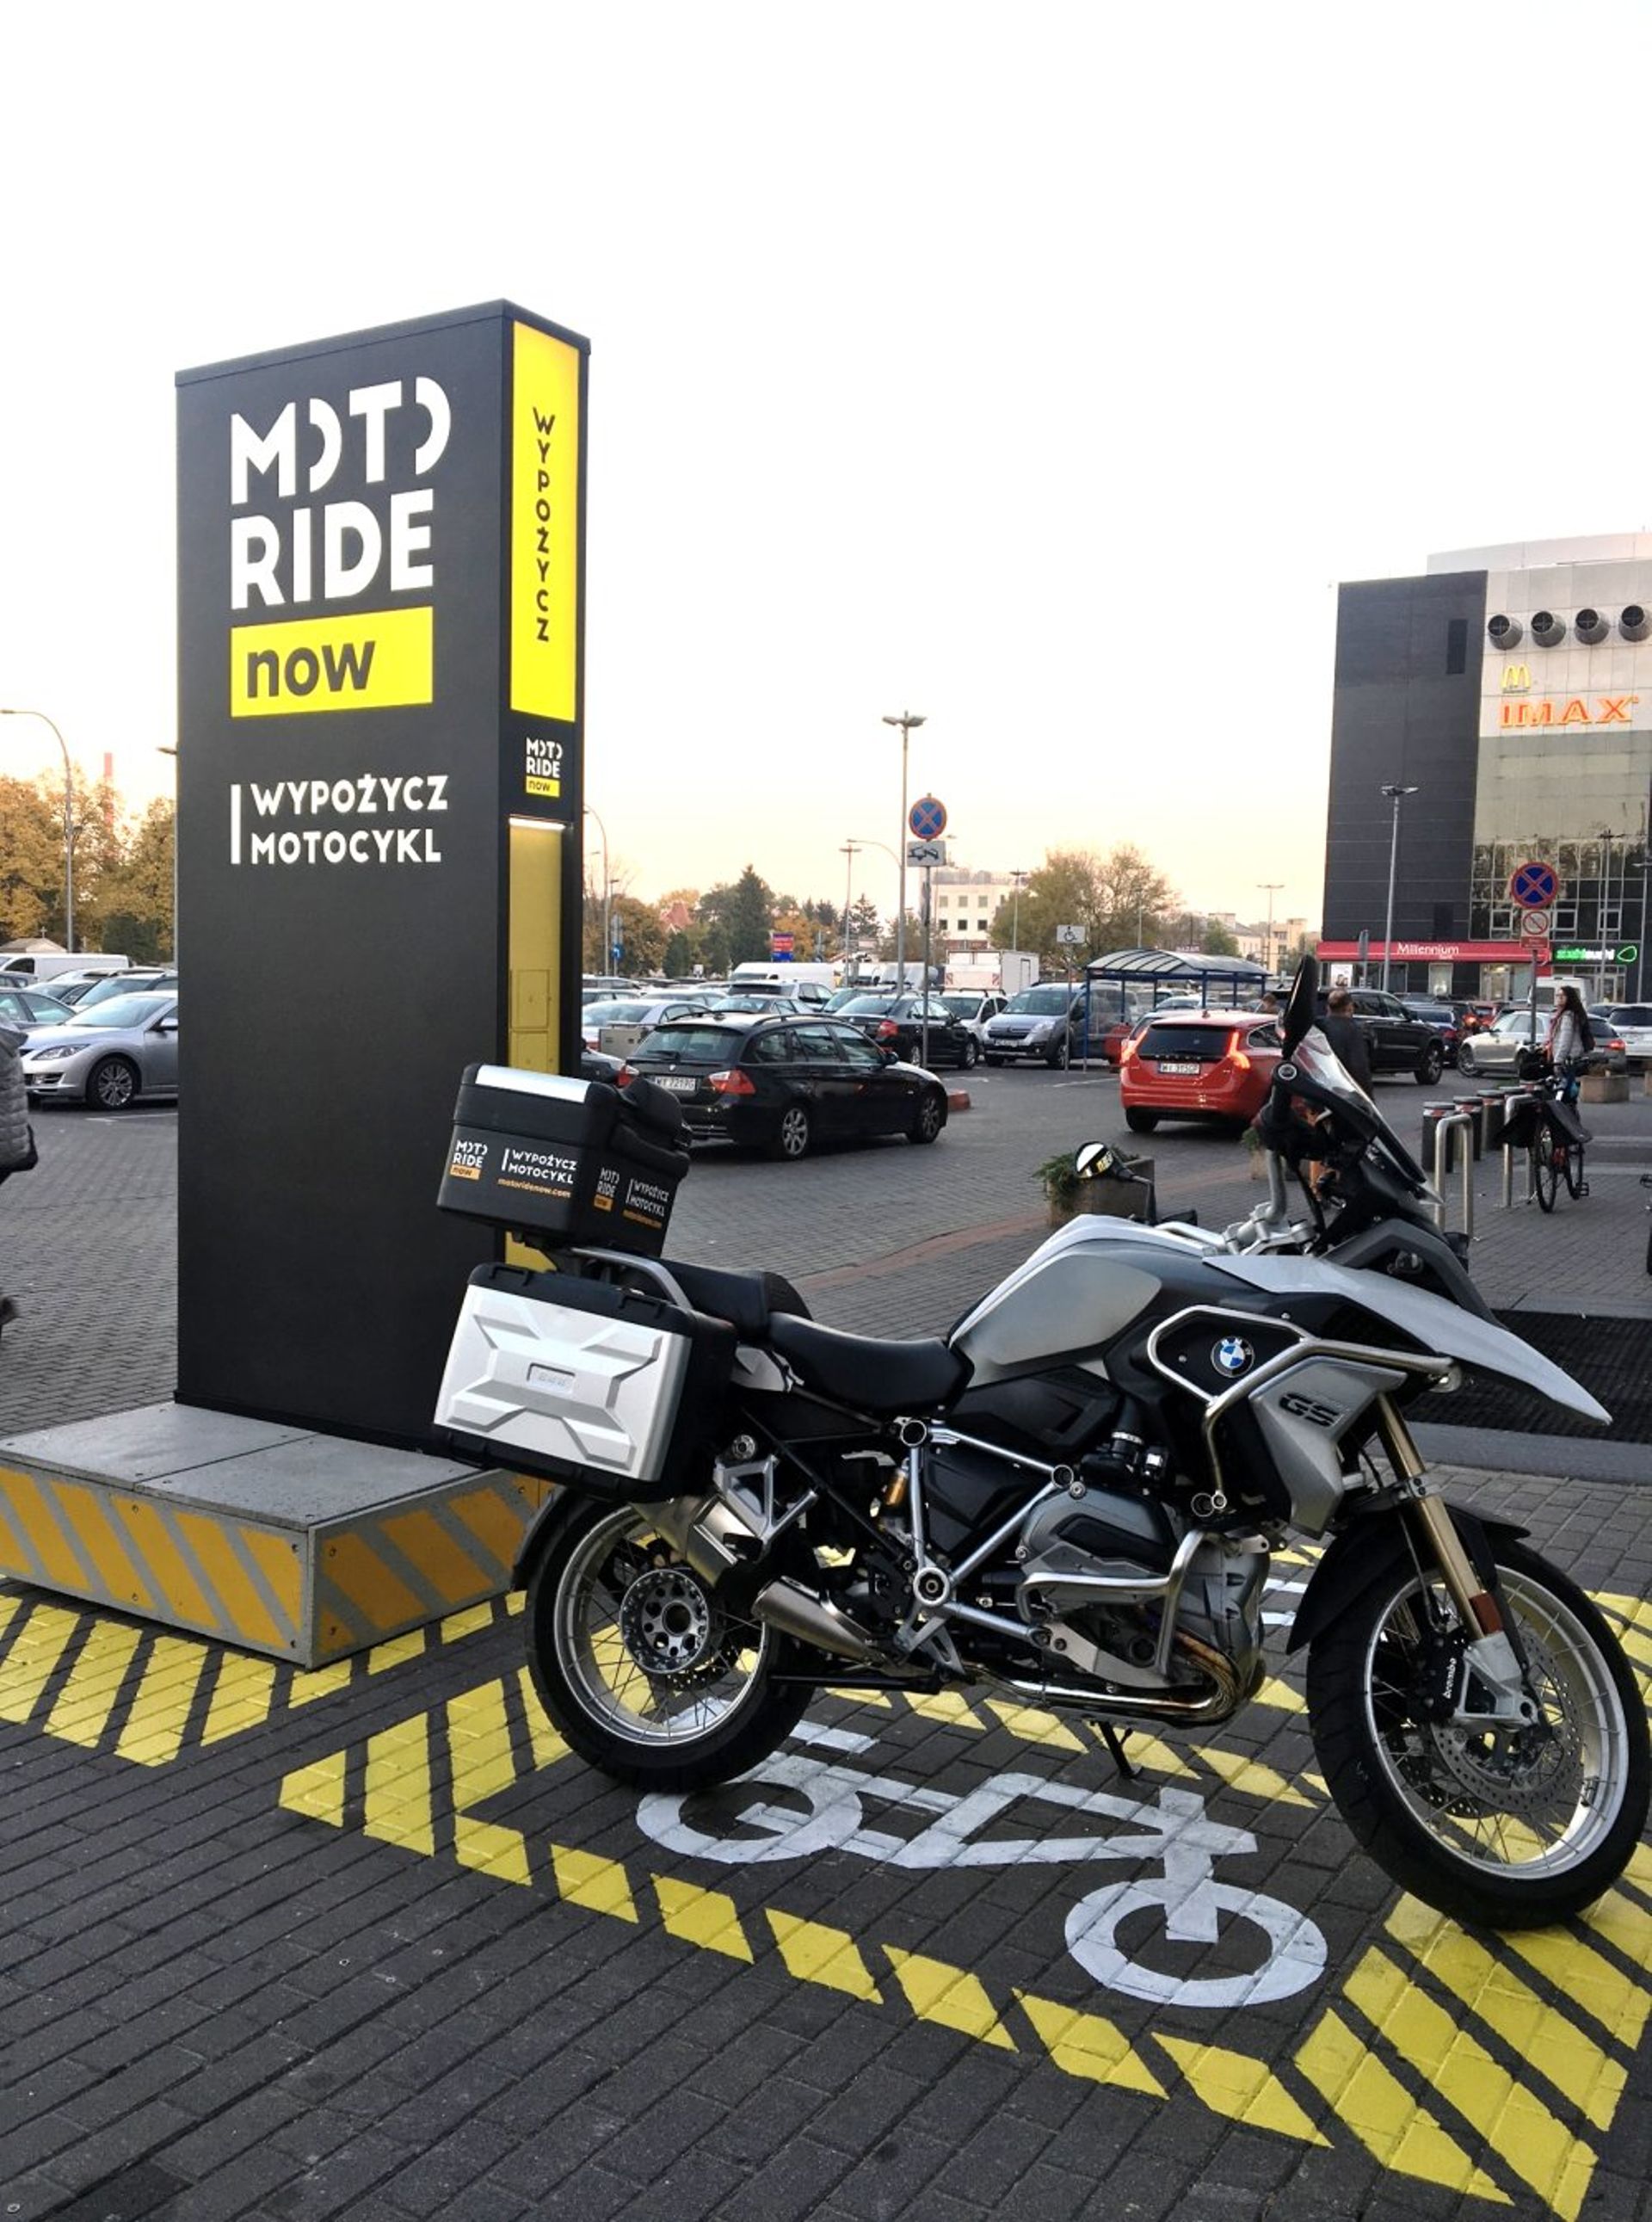  Galeria Sadyba Best Mall w Warszawie uruchomiła pierwszą w Polsce bezobsługową wypożyczalnię motocykli